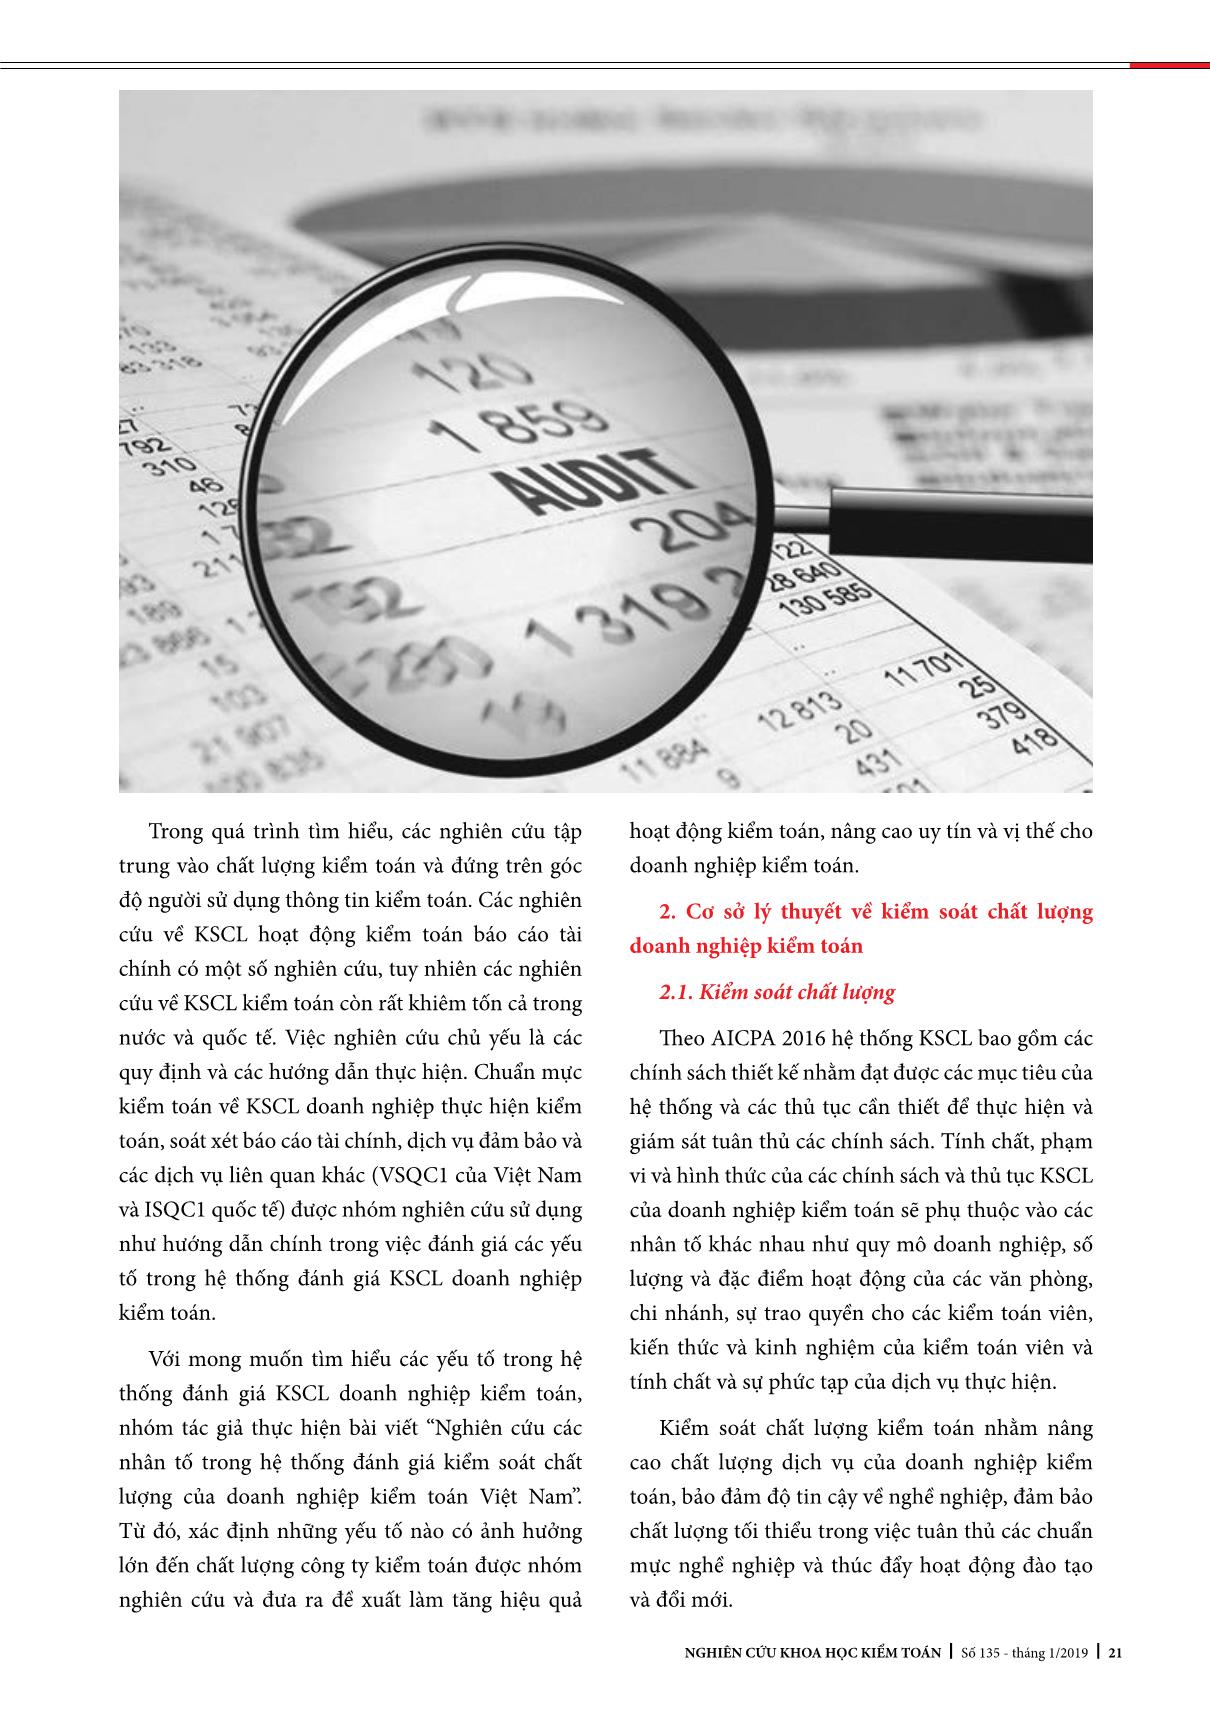 Nghiên cứu các thành phần của hệ thống kiểm soát chất lượng kiểm toán của doanh nghiệp kiểm toán Việt Nam trang 2